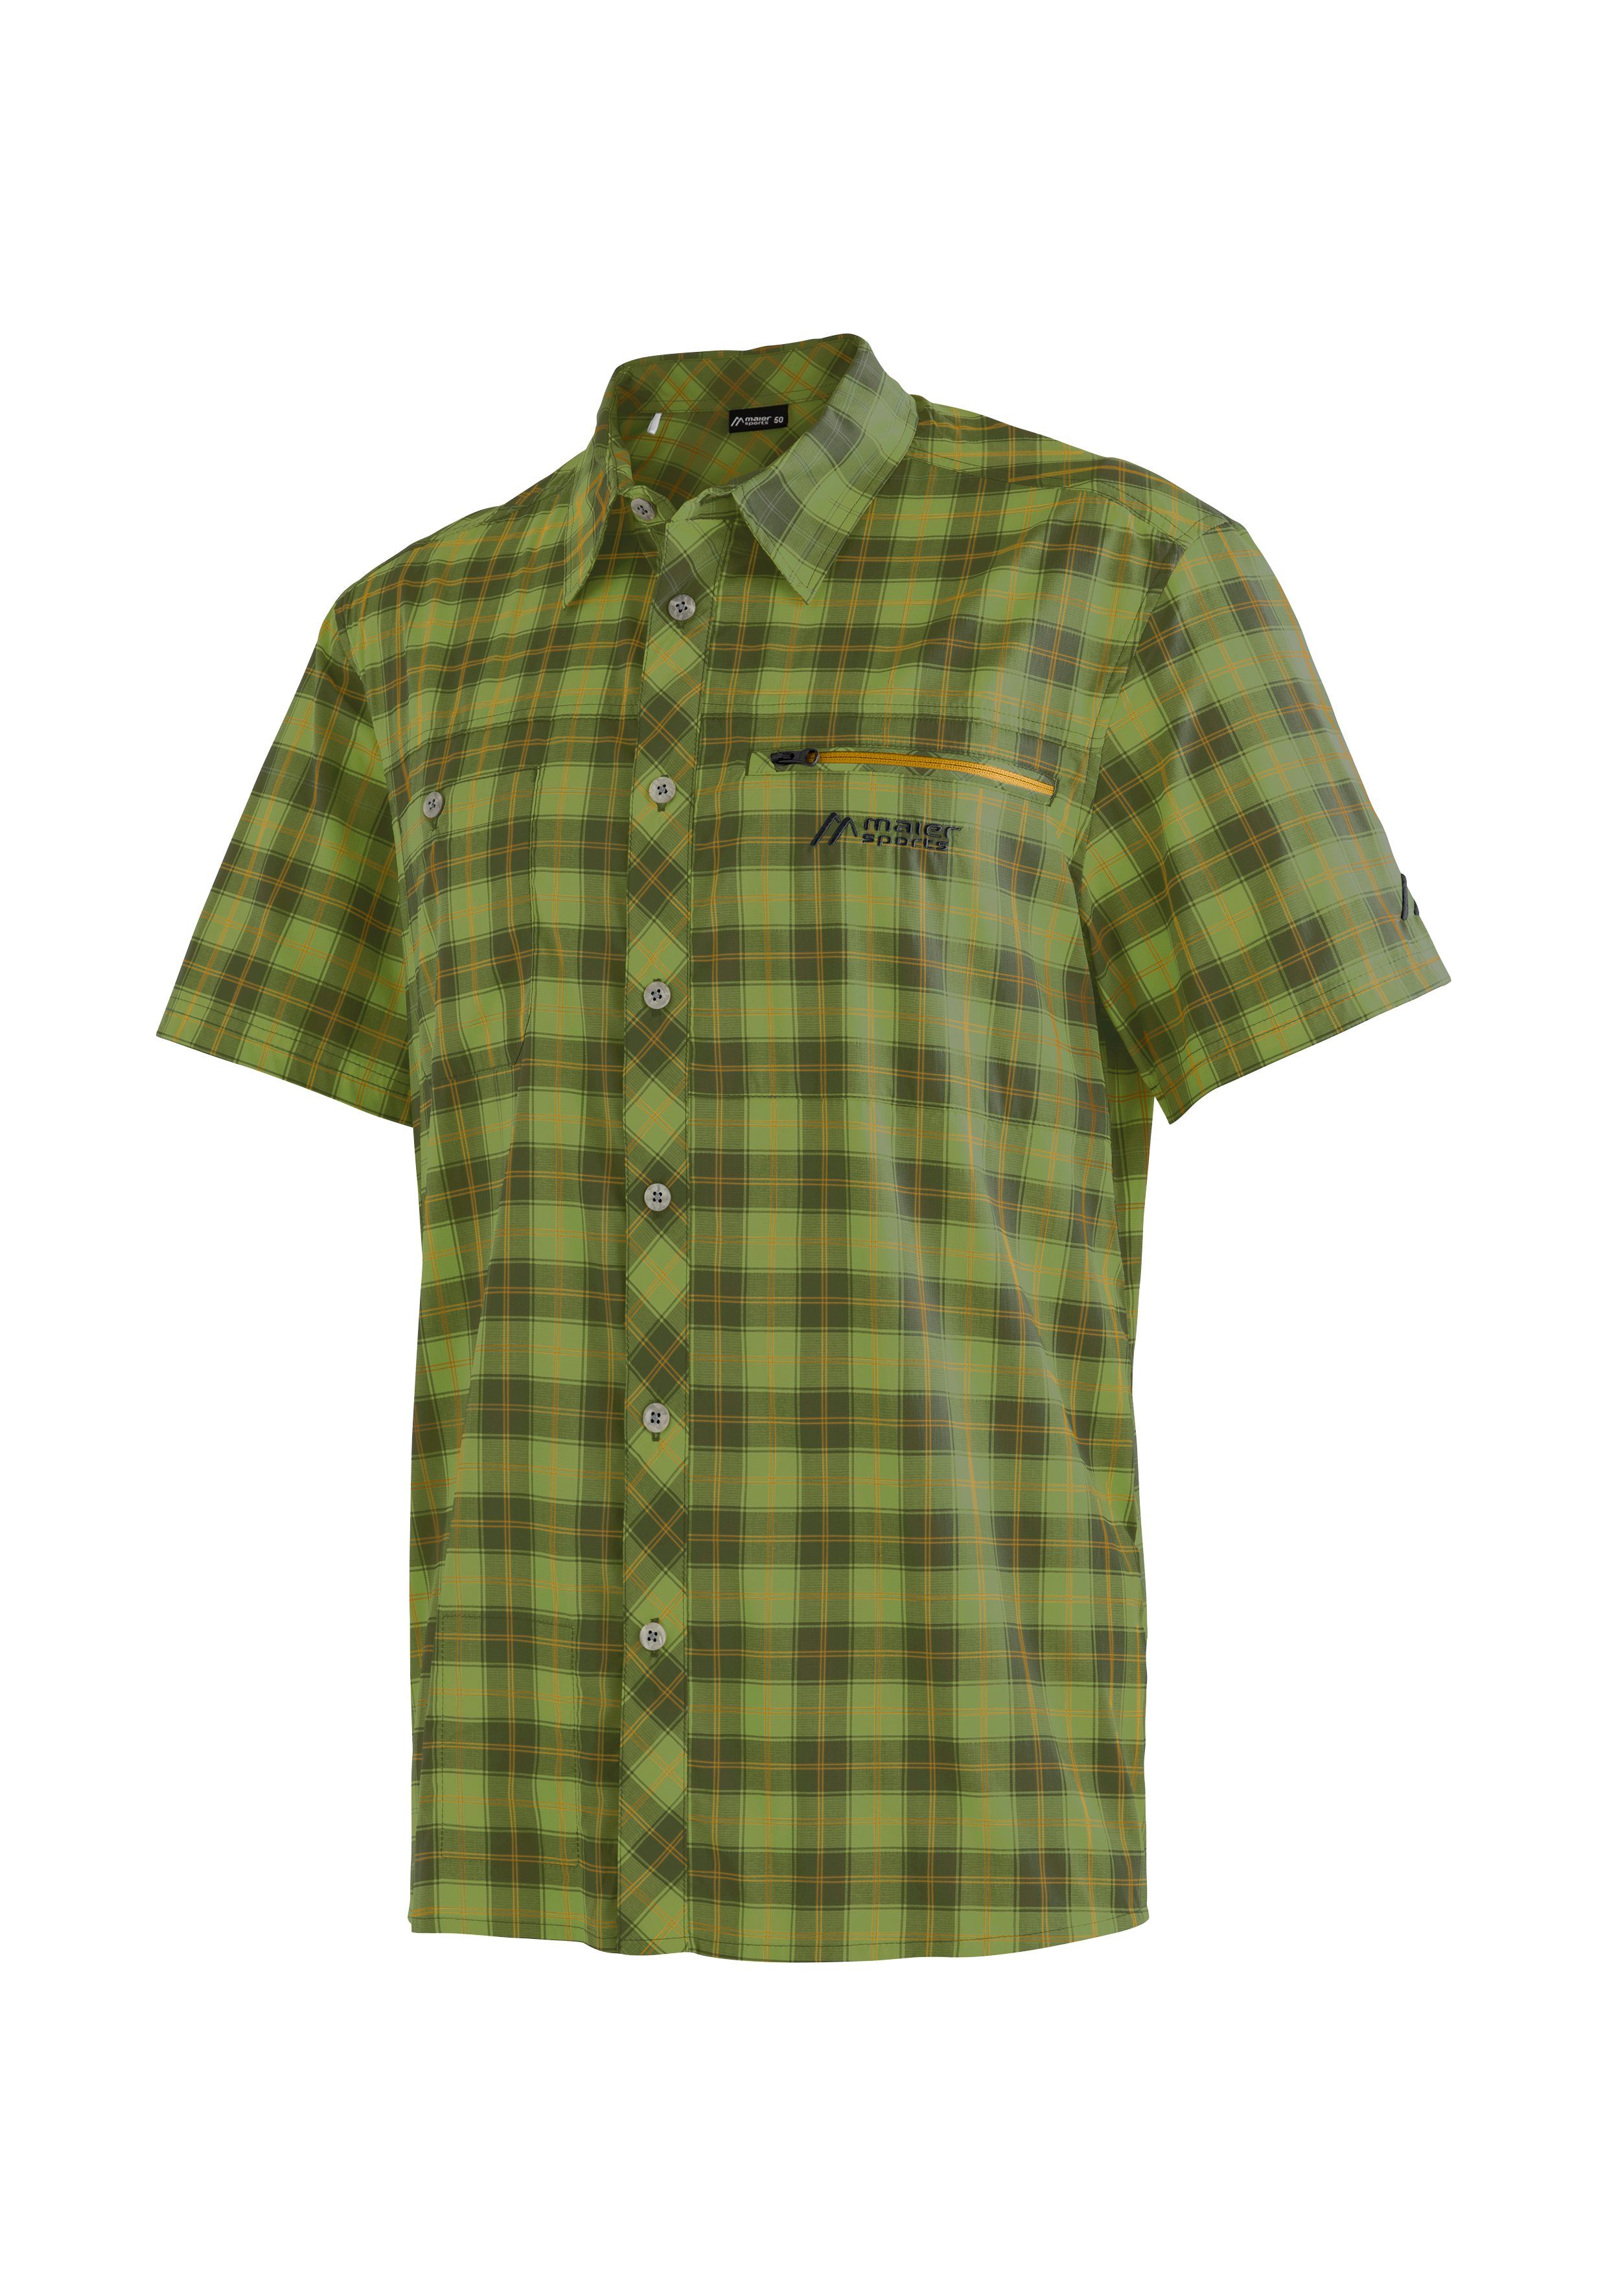 Kasen Karohemd Maier Wanderhemd, Sports Outdoorhemd kurzarm Herrenhemd, grün S/S M atmungsaktives